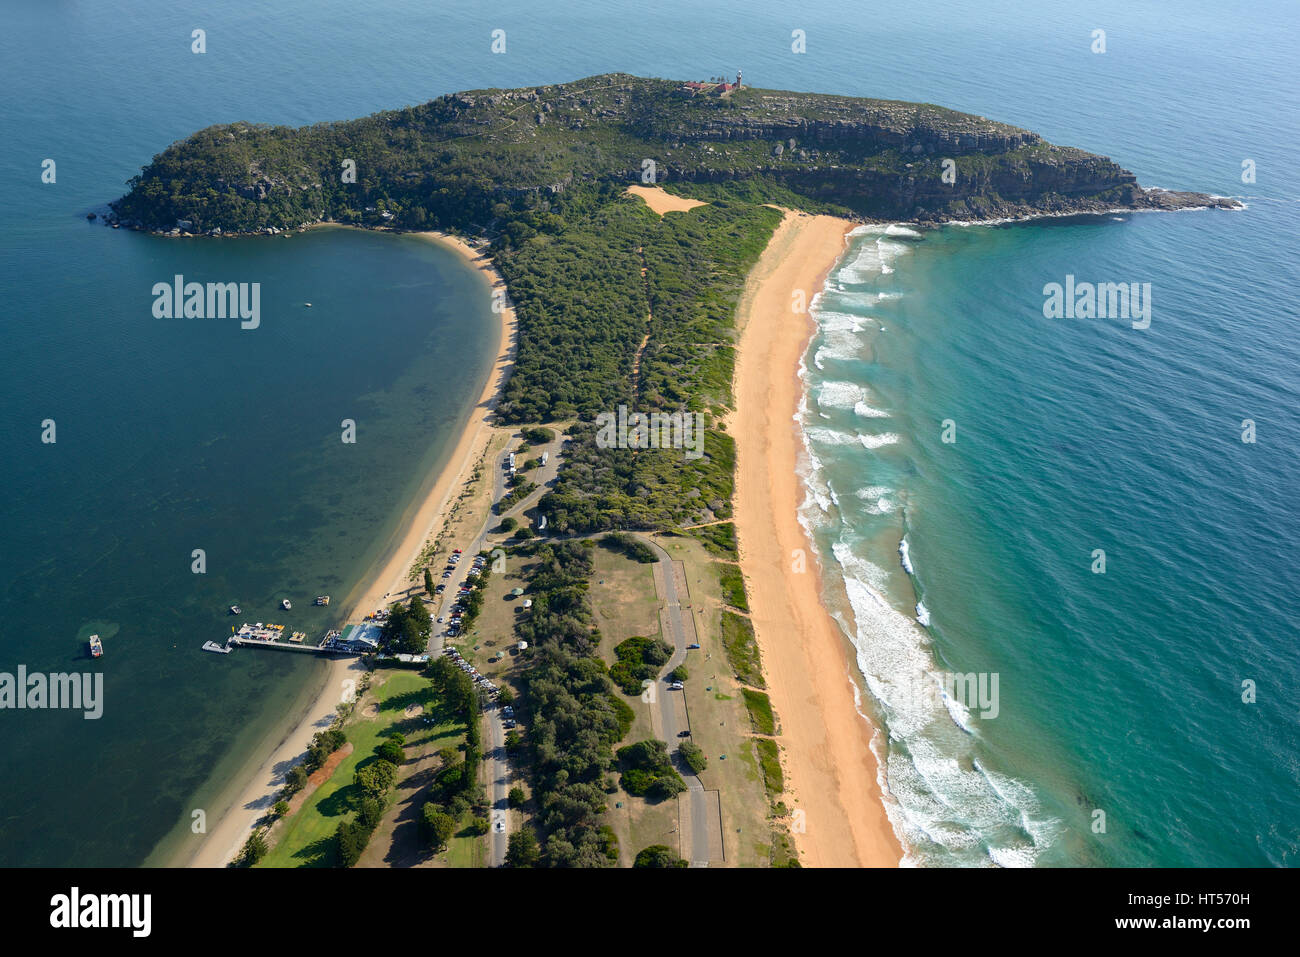 LUFTAUFNAHME. Sydneys nördlichster Punkt, Pittwater auf der linken Seite. Barrenjoey Headlands, Palm Beach, Sydney, New South Wales, Australien. Stockfoto